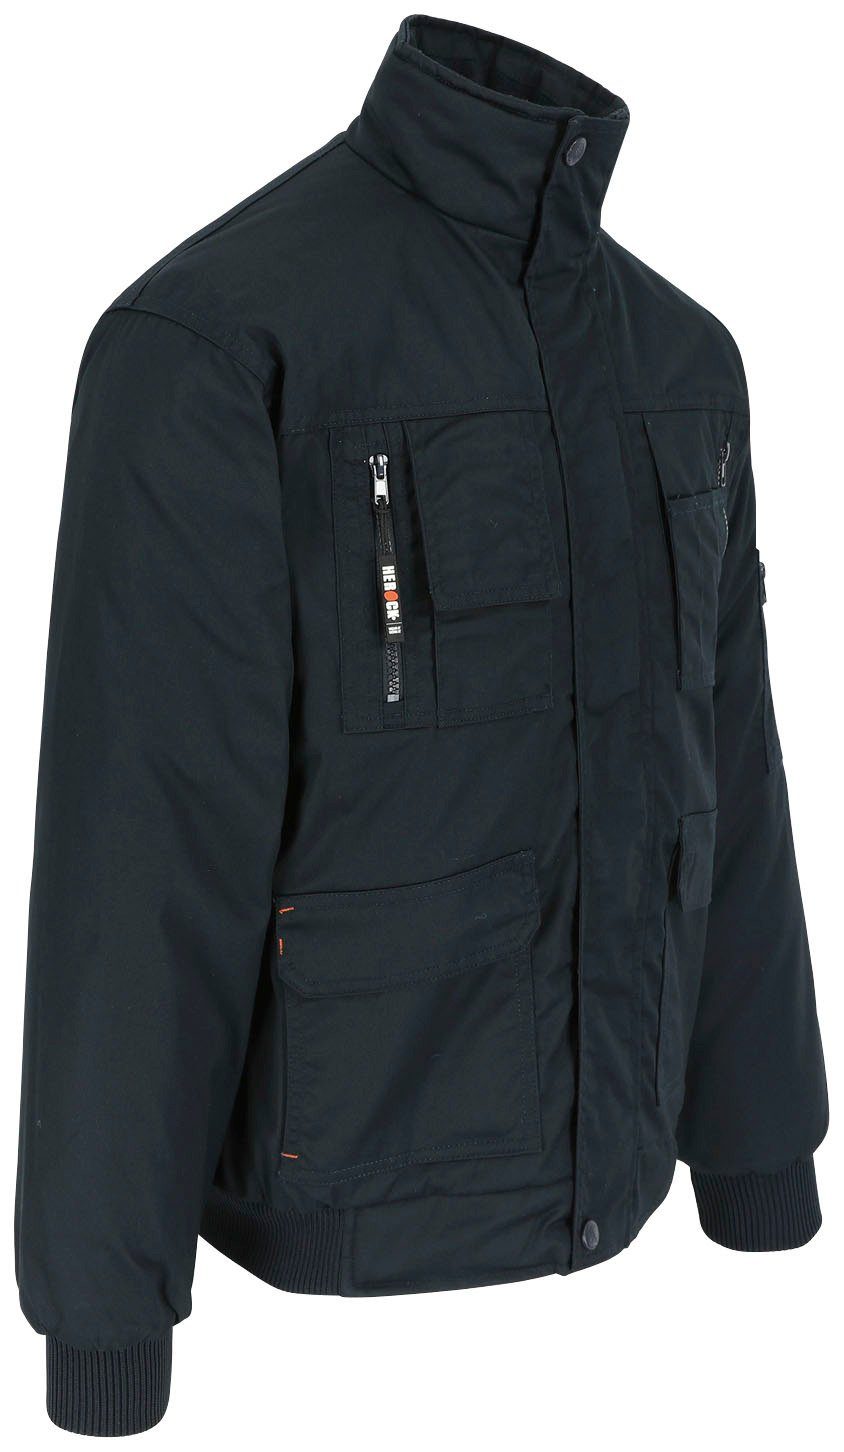 Herock Arbeitsjacke Typhon Jacke viele Farben mit Taschen, viele Wasserabweisend Fleece-Kragen, marine robust